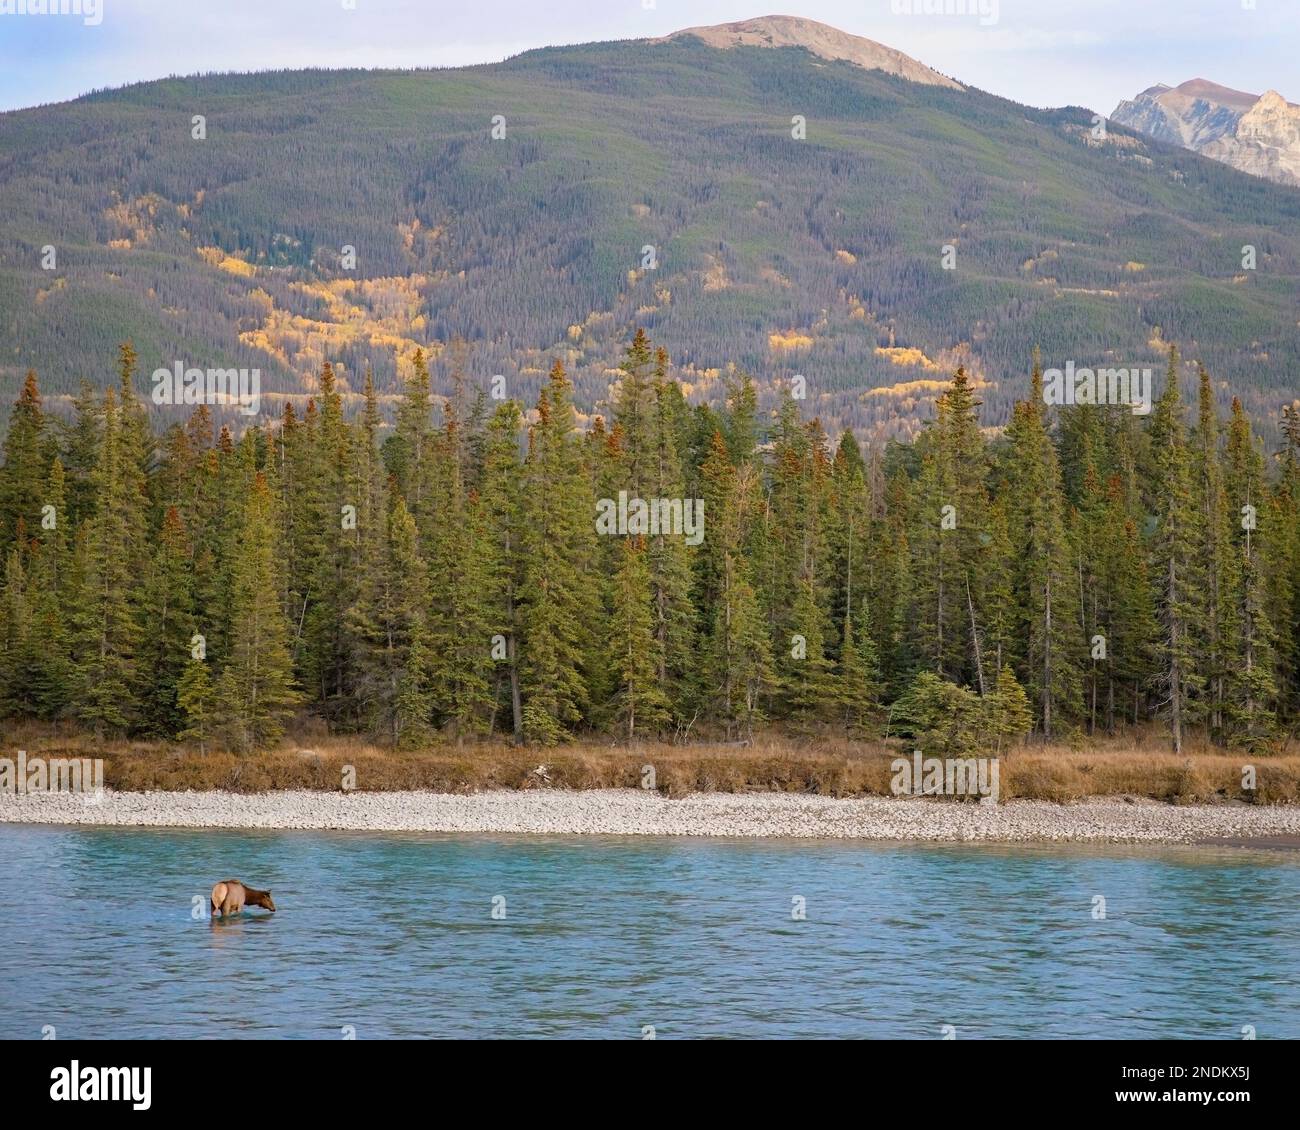 Wapitihirsche, die Wasser aus dem Athabasca River in den Rocky Mountains des Jasper National Park, Alberta, Kanada, trinken. Cervus canadensis Stockfoto